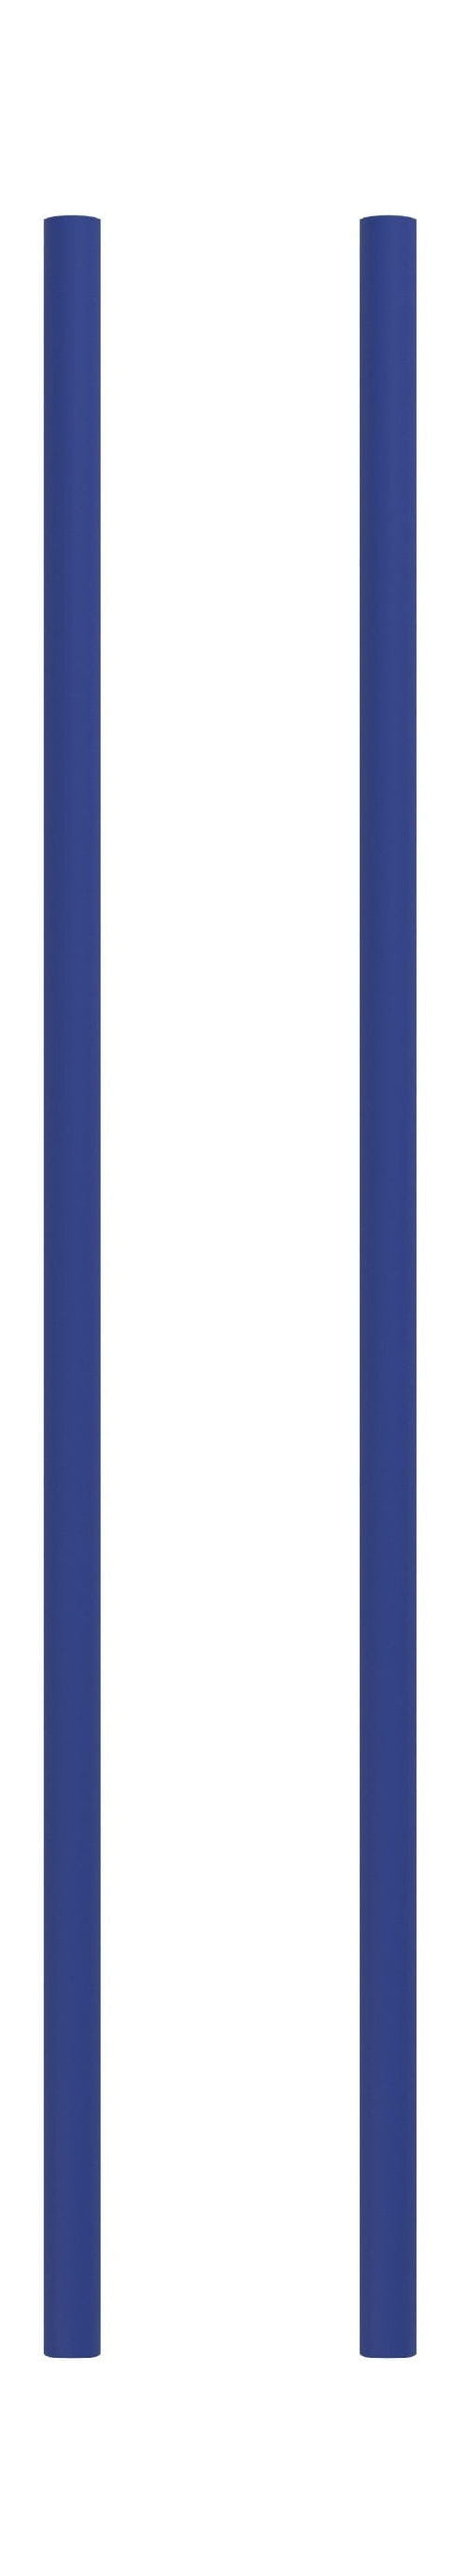 Sistema de estanterías Moebe/estantería de pared 65 cm, azul profundo